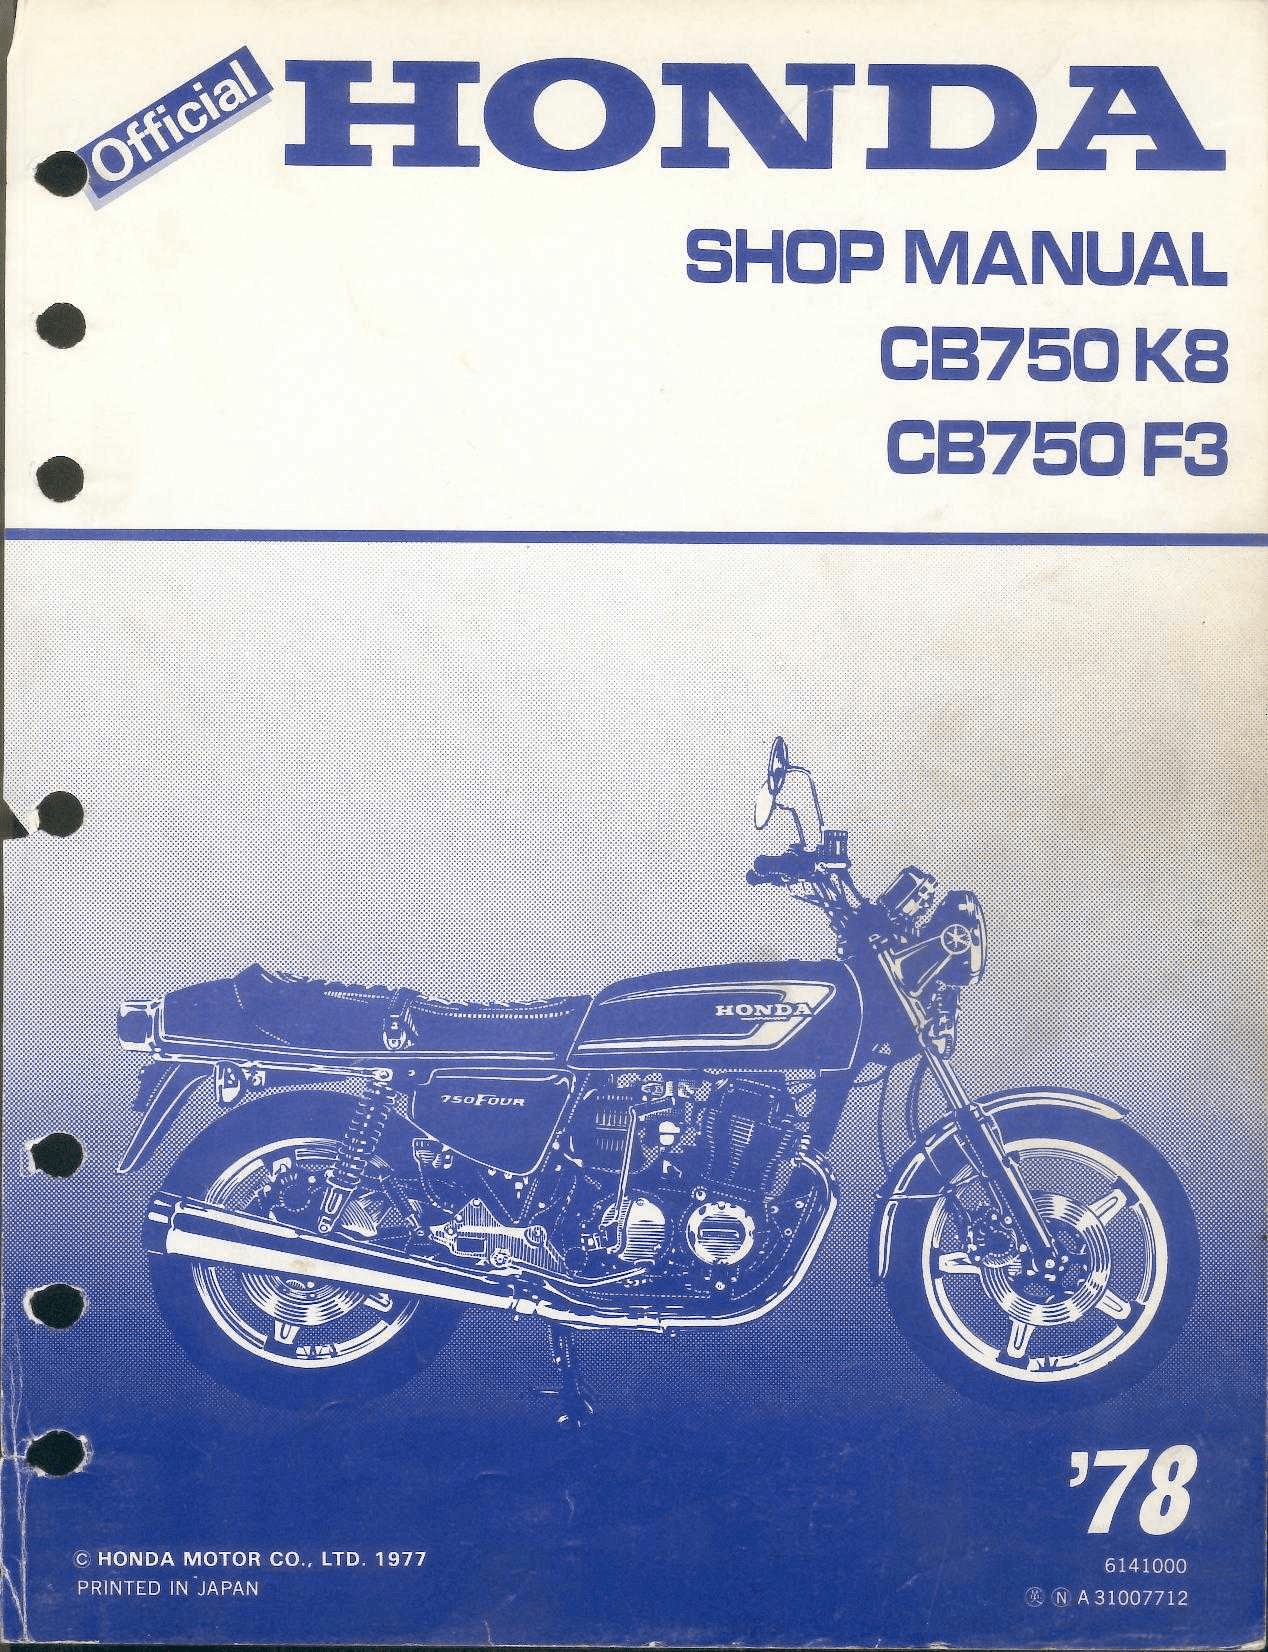 Free Download Honda G300 Repair Manual